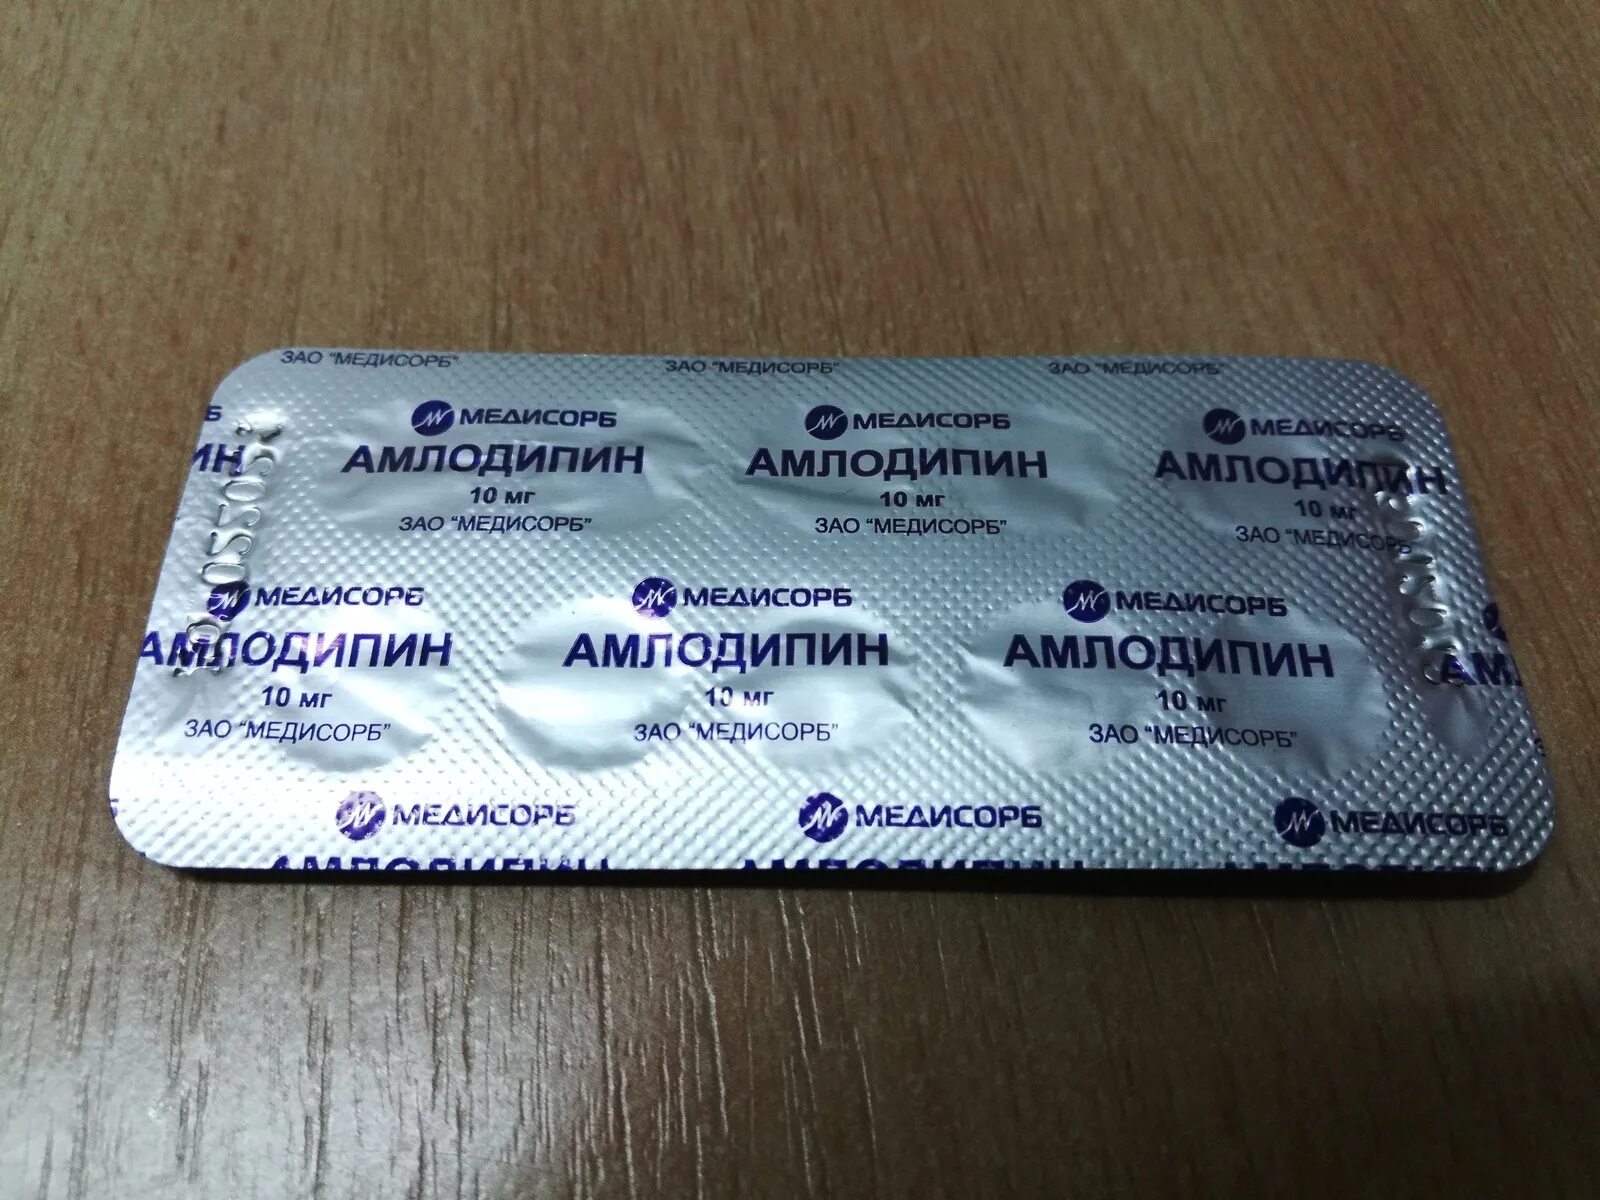 Медисорб амлодипин Медисорб 10мг. Флуконазол Медисорб. Таблетки от давления амлодипин. Таблетки в серебристой упаковке.